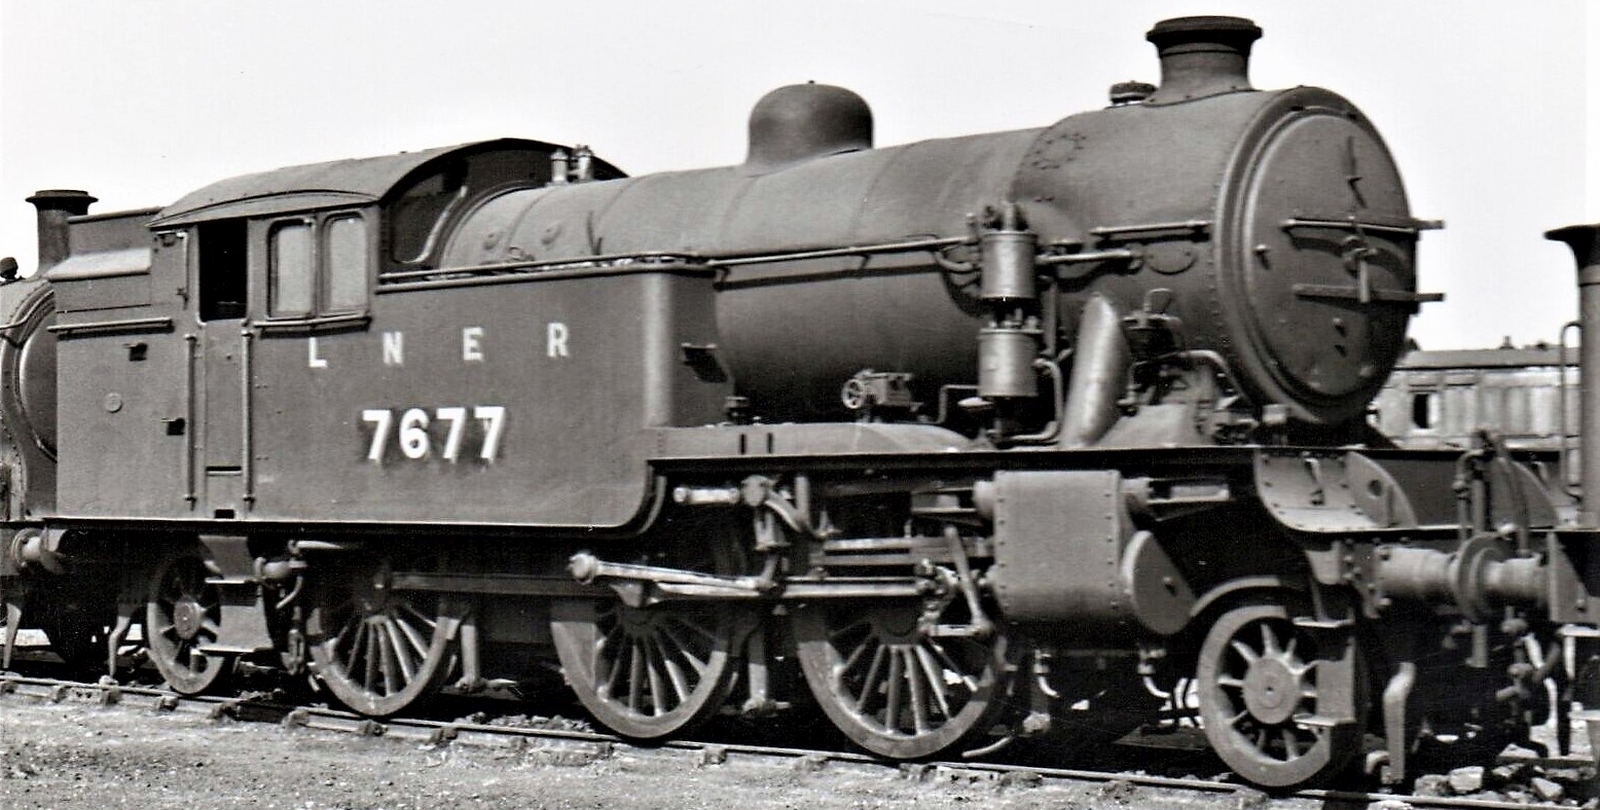 V1 No. 7677 in April 1948